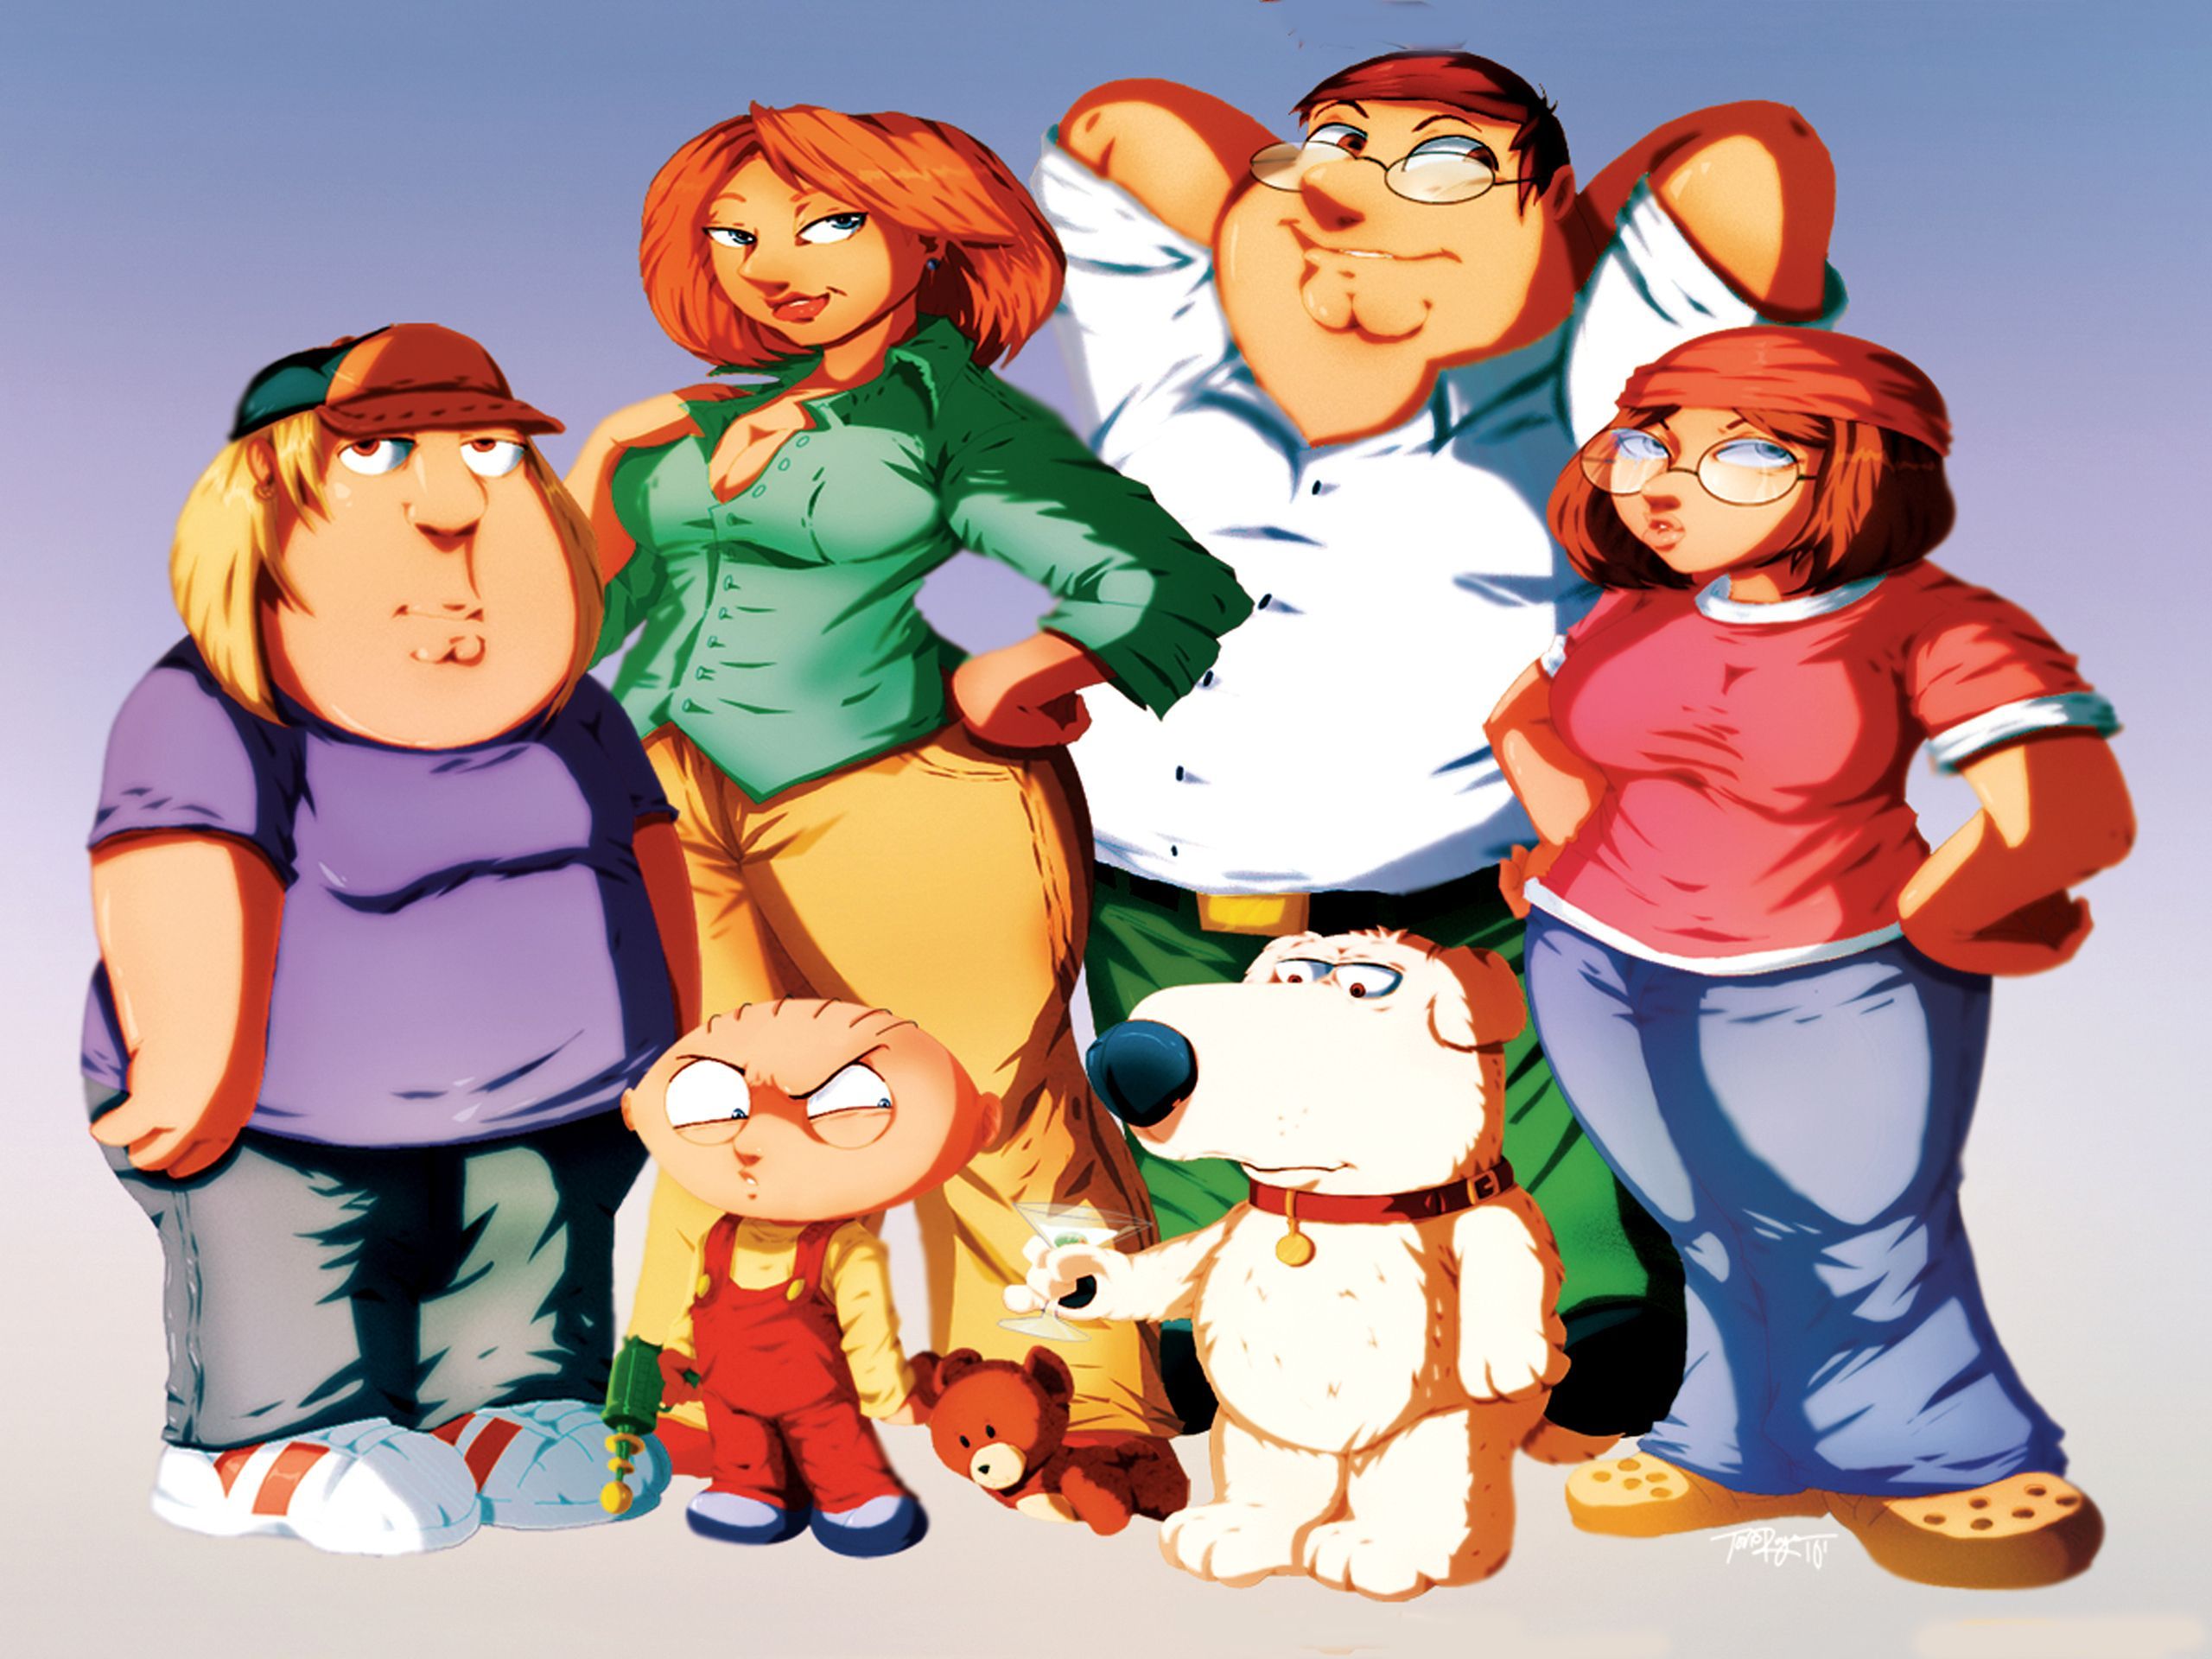 family guy wallpaper. Family Guy Wallpaper. Desktop Wallpaper. Family guy, Cartoon wallpaper, Anime style